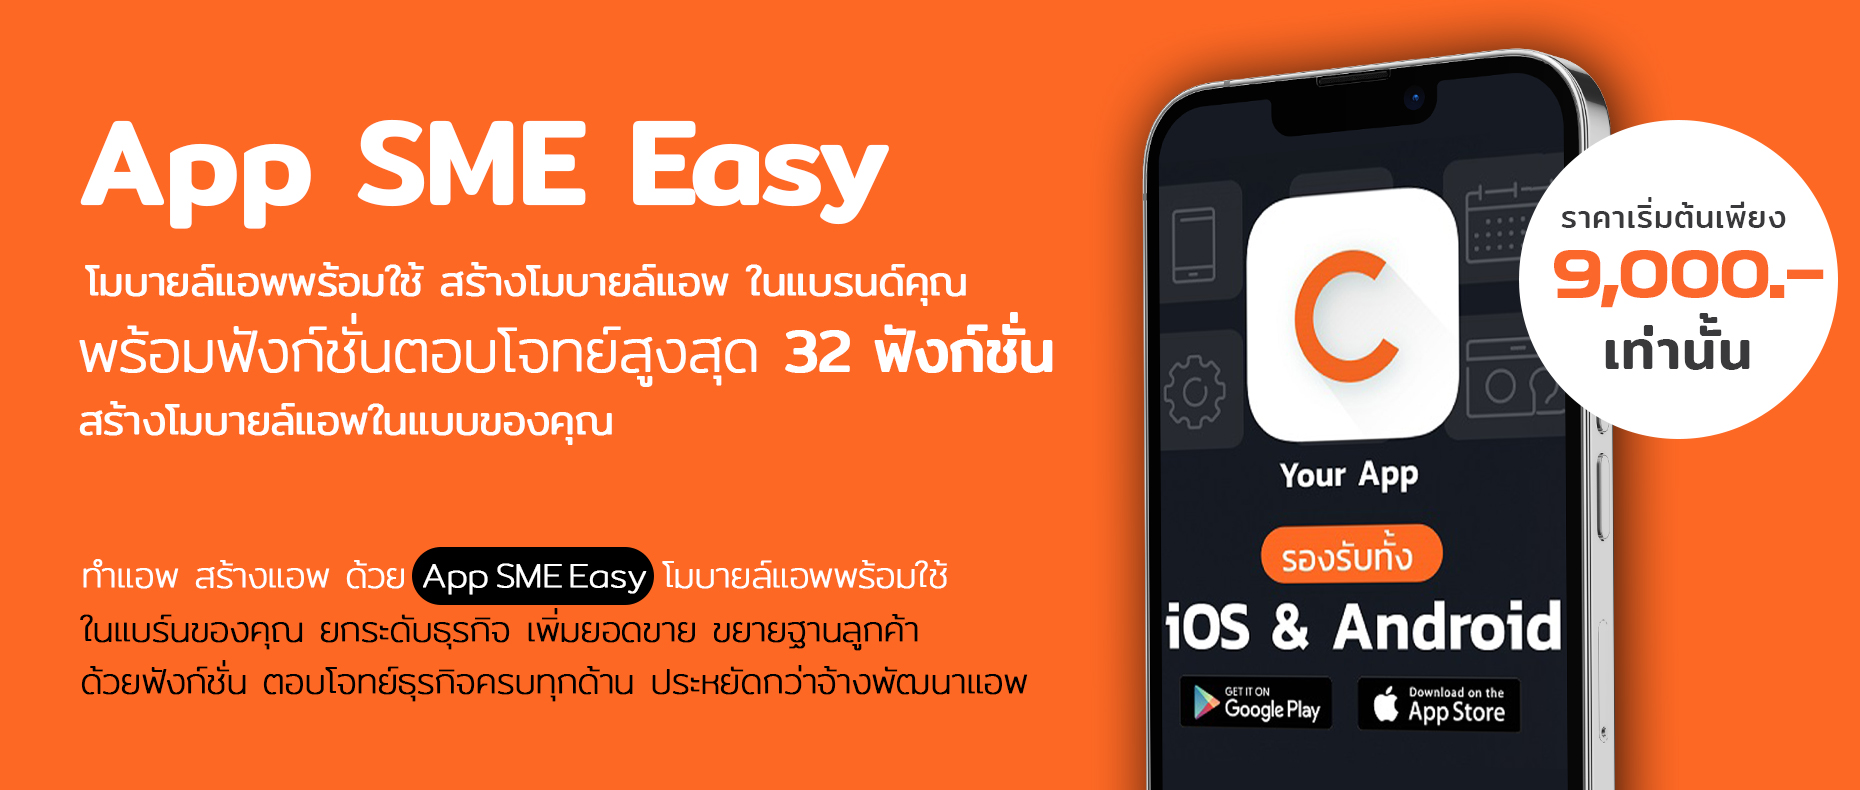 App SME Easy โมบายล์แอพพร้อมใช้ สร้างโมบายล์แอพ ในแบรนด์คุณ พร้อมฟังก์ชั่นตอบโจทย์สูงสุด 32 ฟังก์ชั่น สร้างโมบายแอพในแบบของคุณ ได้แล้ววันนี้ ทำแอพ สร้างแอพ ด้วย App SME Easy โมบายล์แอพพร้อมใช้ ในแบรนด์ของคุณ ยกระดับธุรกิจ เพิ่มยอดขาย ขยายฐานลูกค้า ด้วยฟังก์ชั่นตอบโจทย์ธุรกิจครบทุกด้าน ประหยัดกว่าจ้างพัฒนาแอพ ราคาเริ่มต้นเพียง 9,000 บาท เท่านั้น